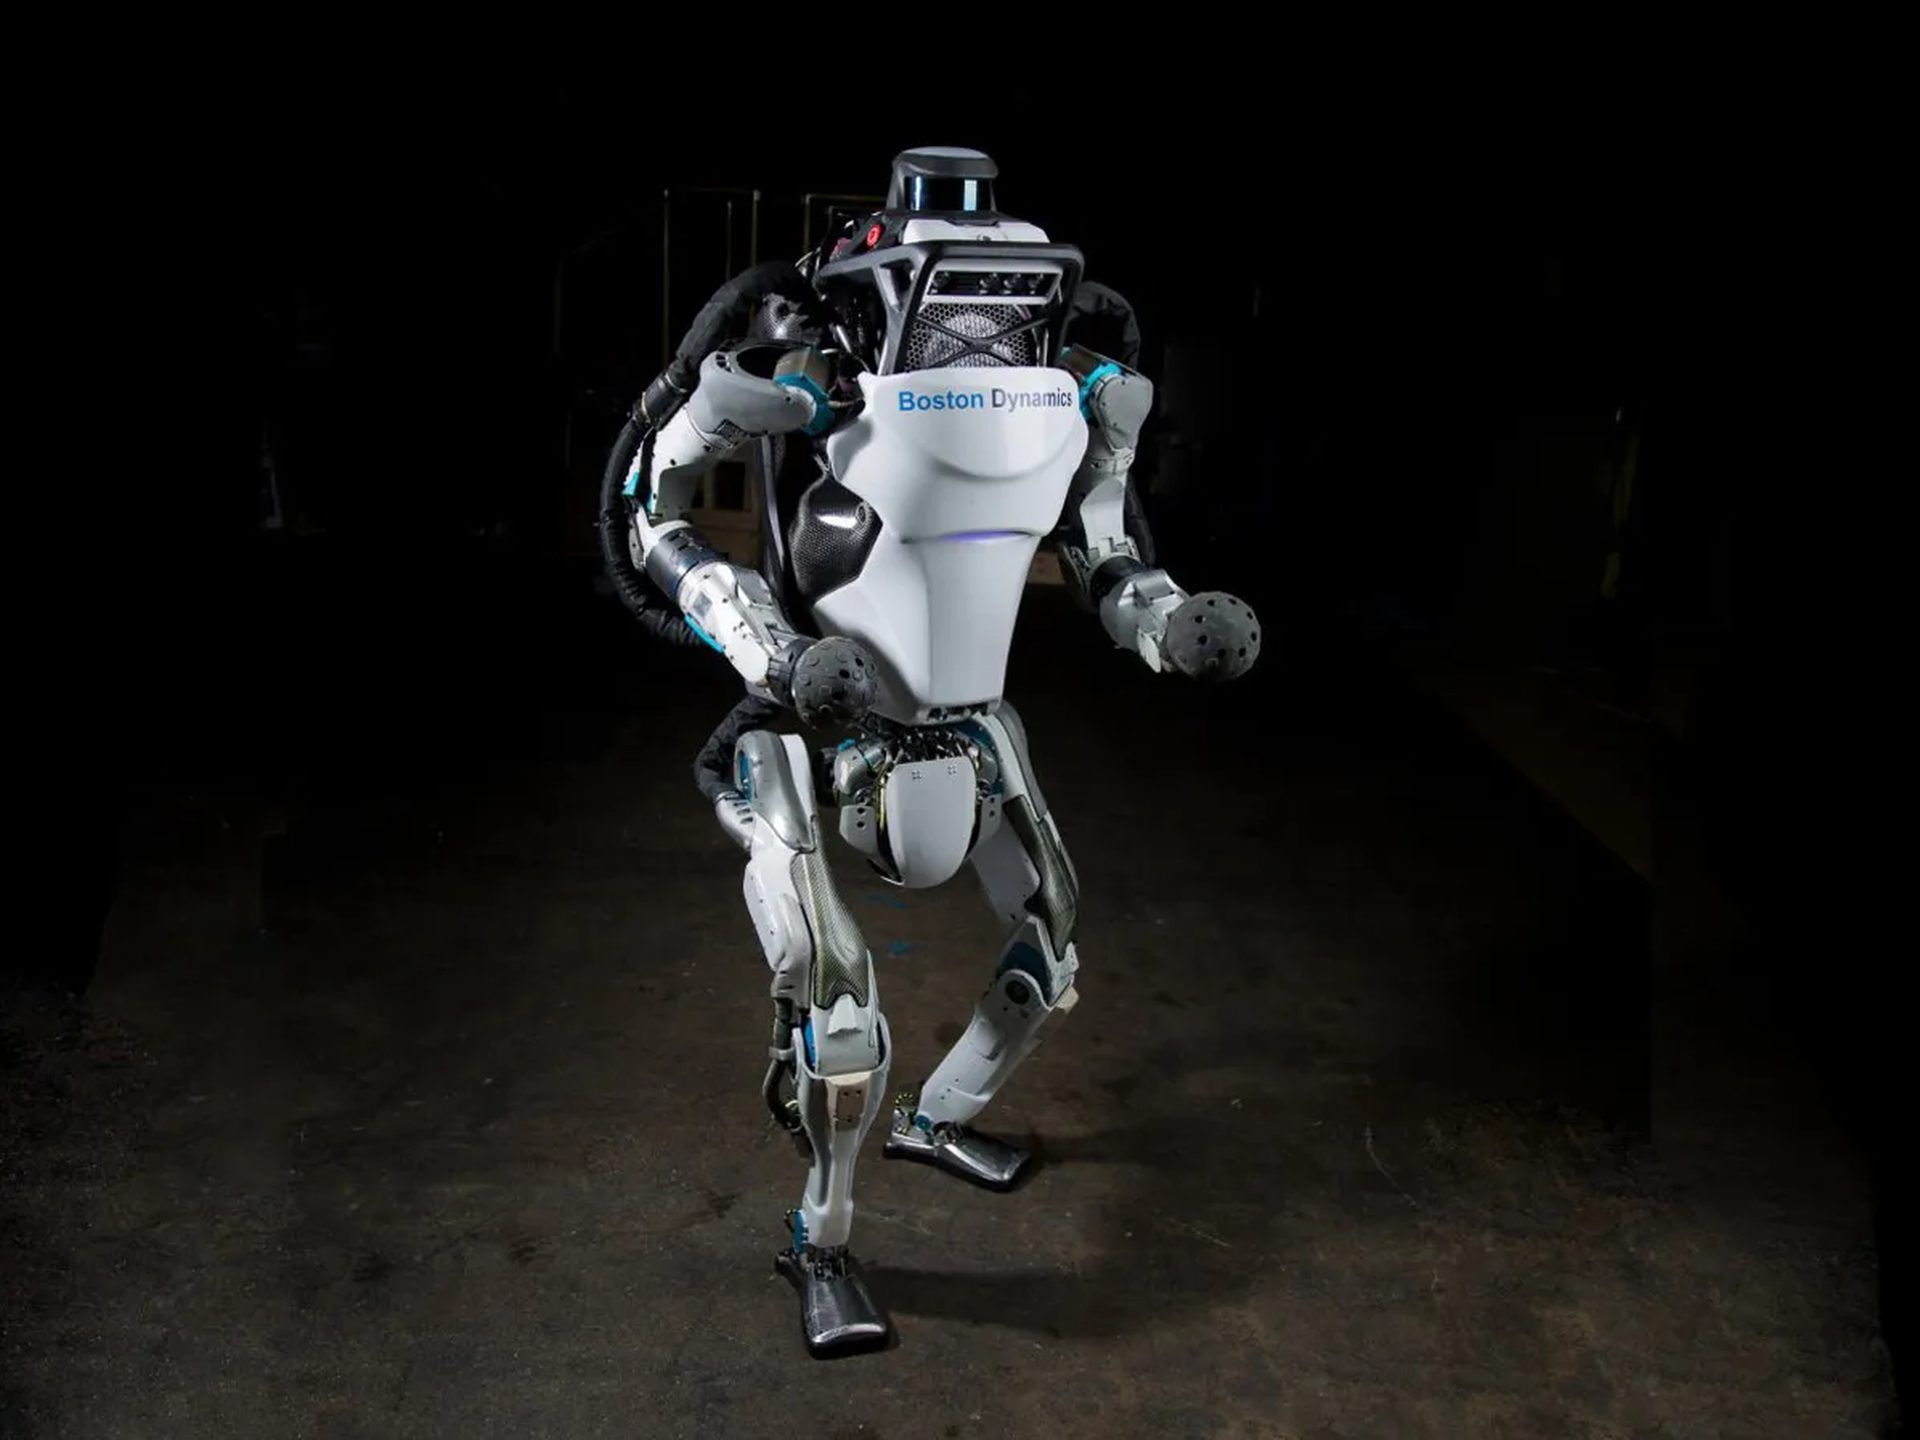 Como o Boston Dynamics ganha dinheiro?